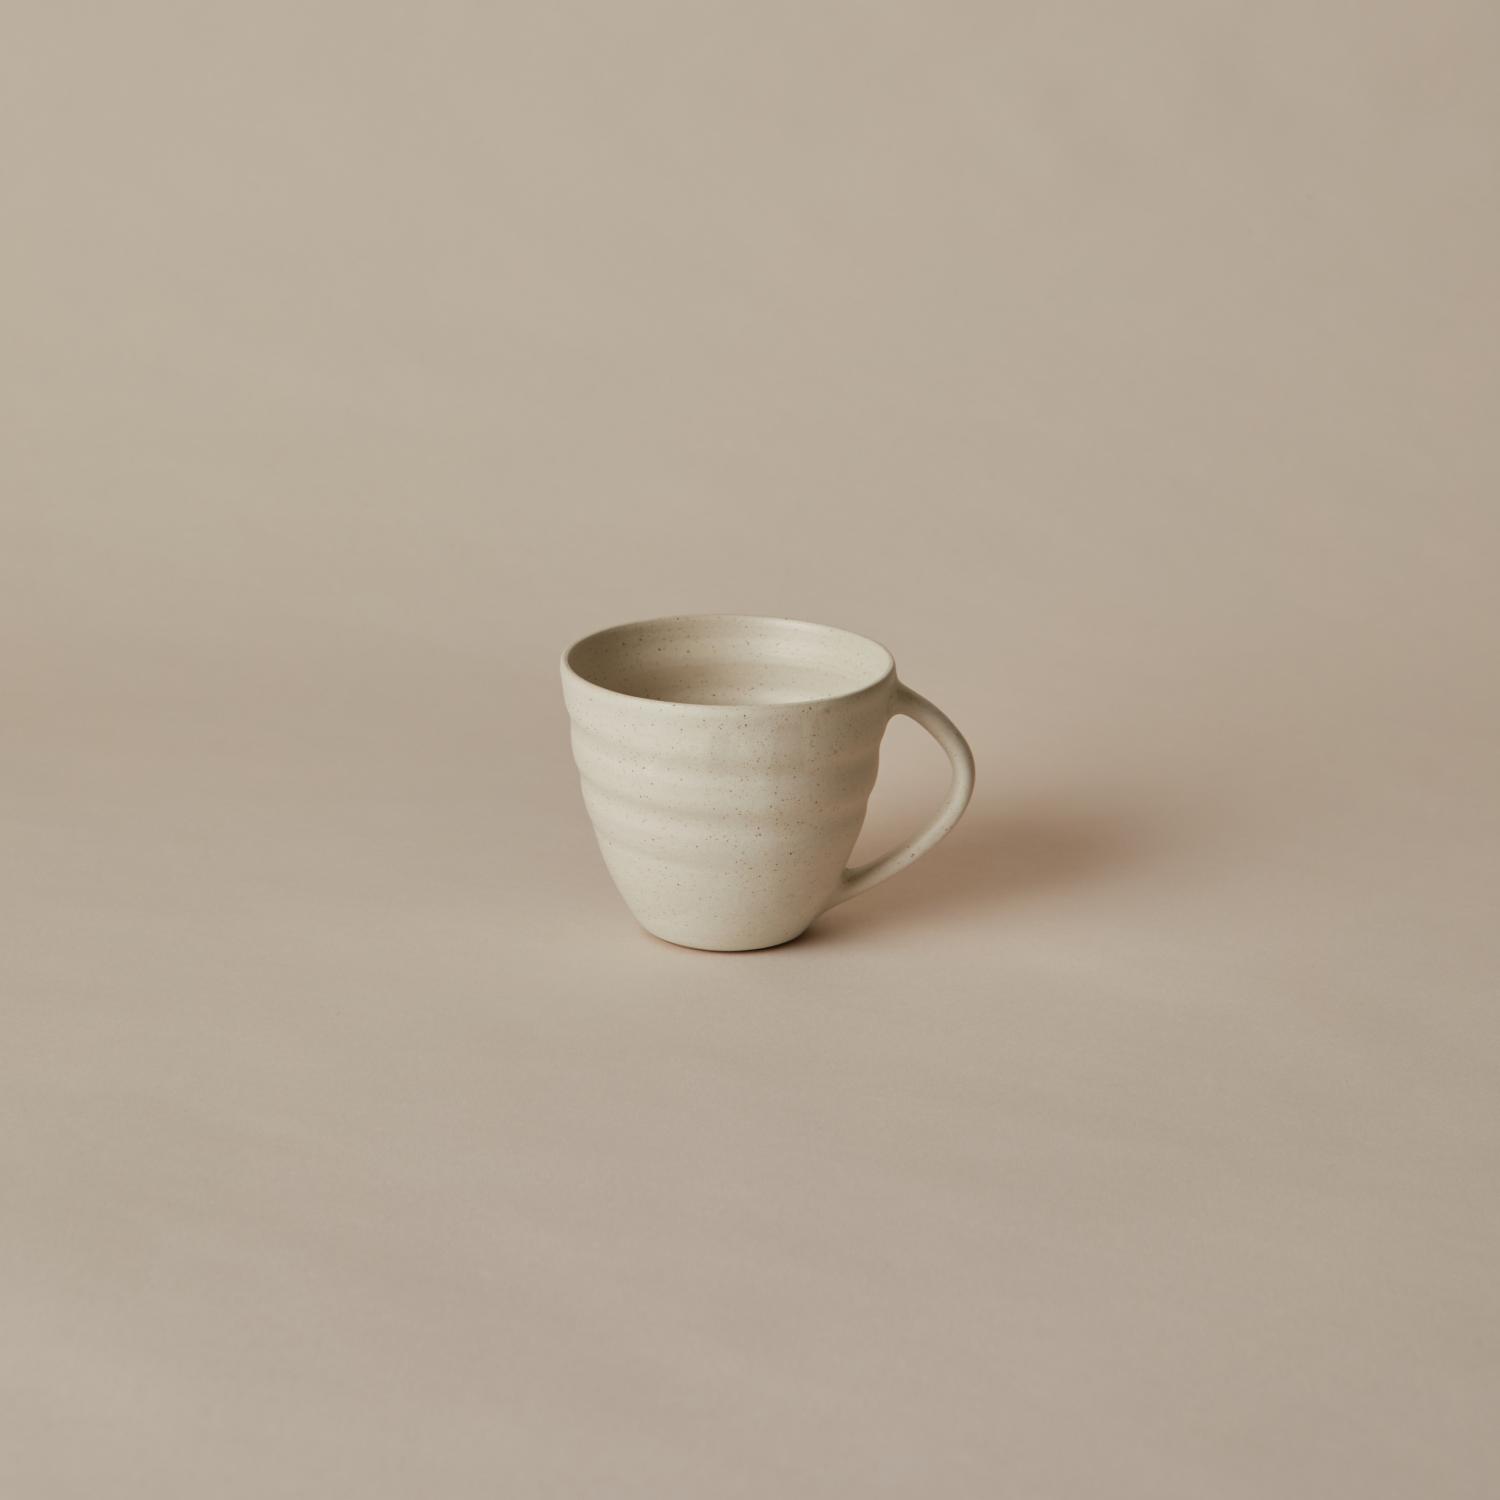 Teacup in Vintage white